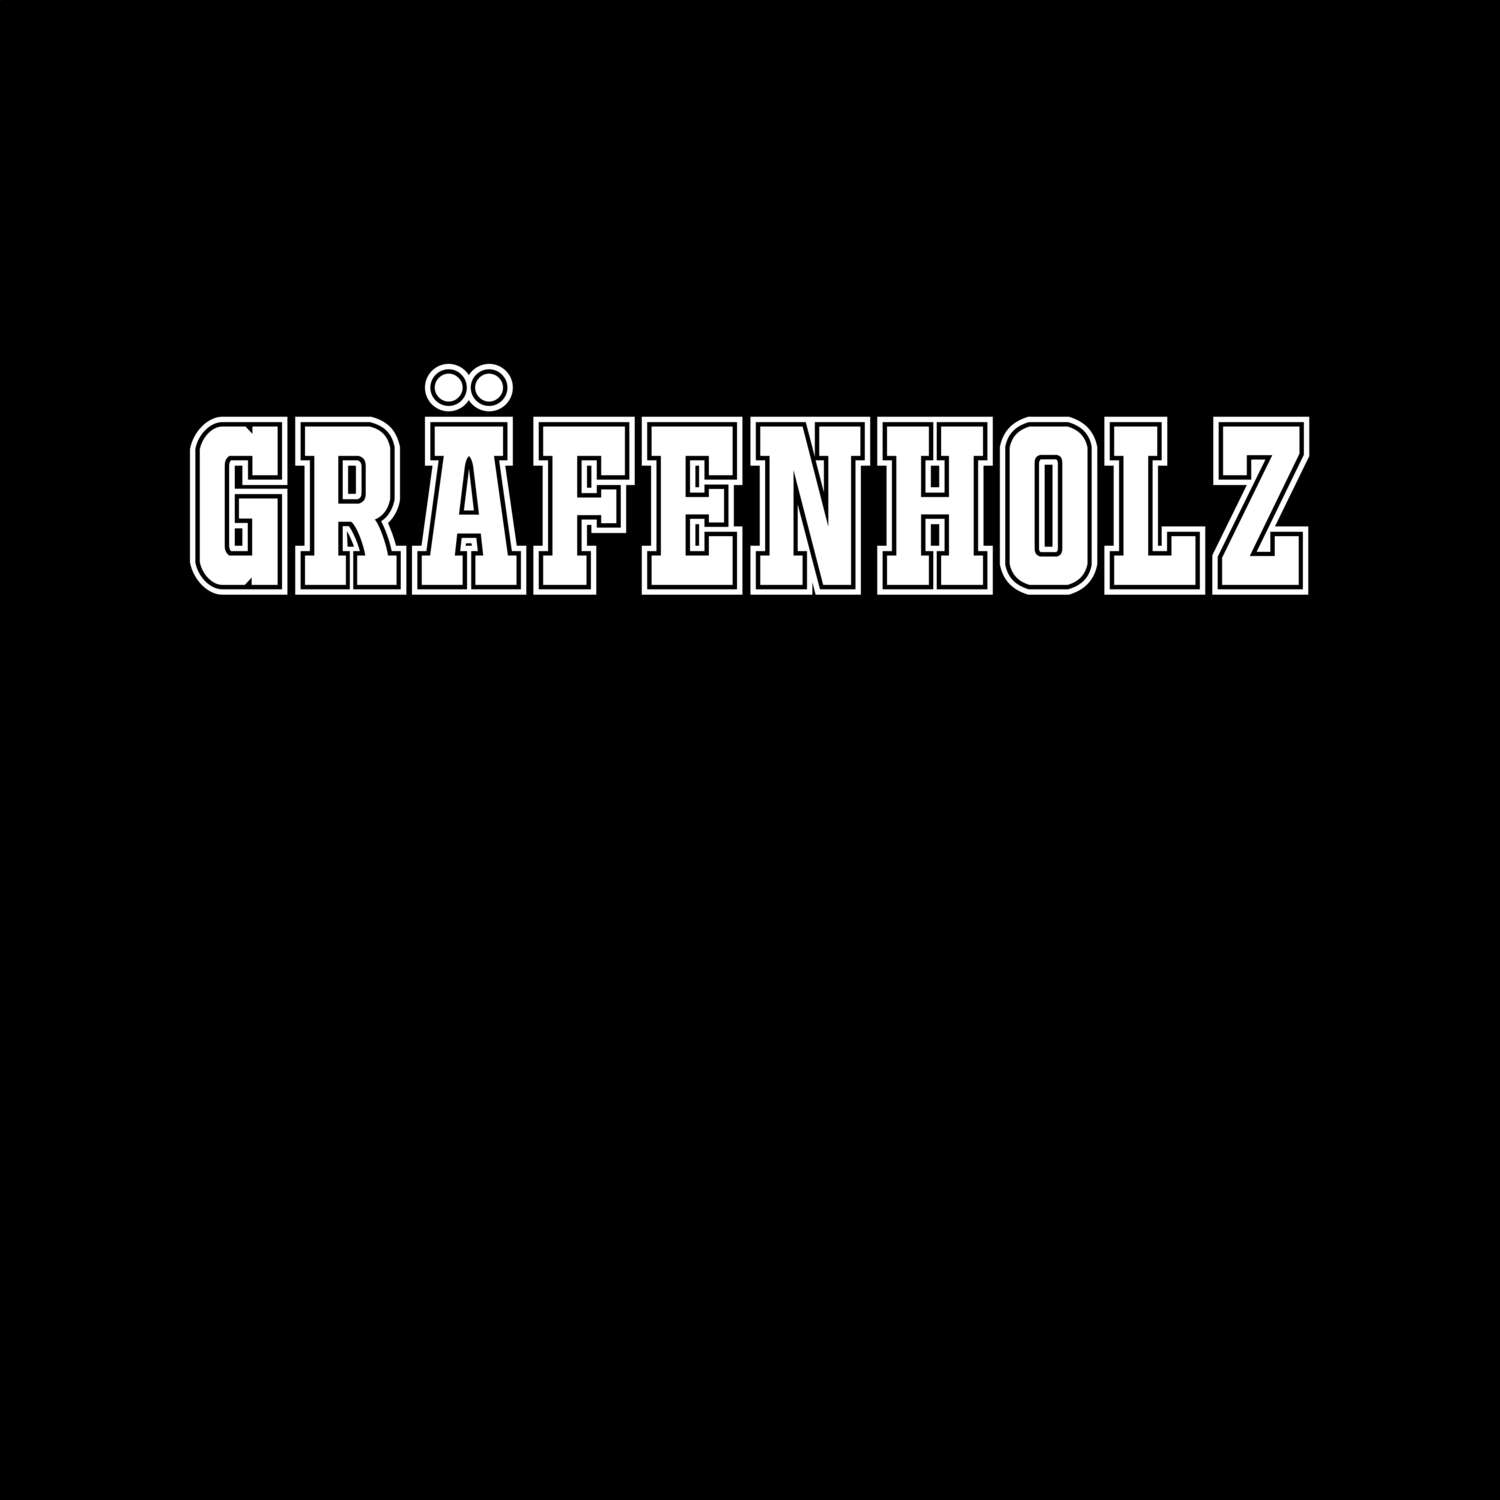 Gräfenholz T-Shirt »Classic«